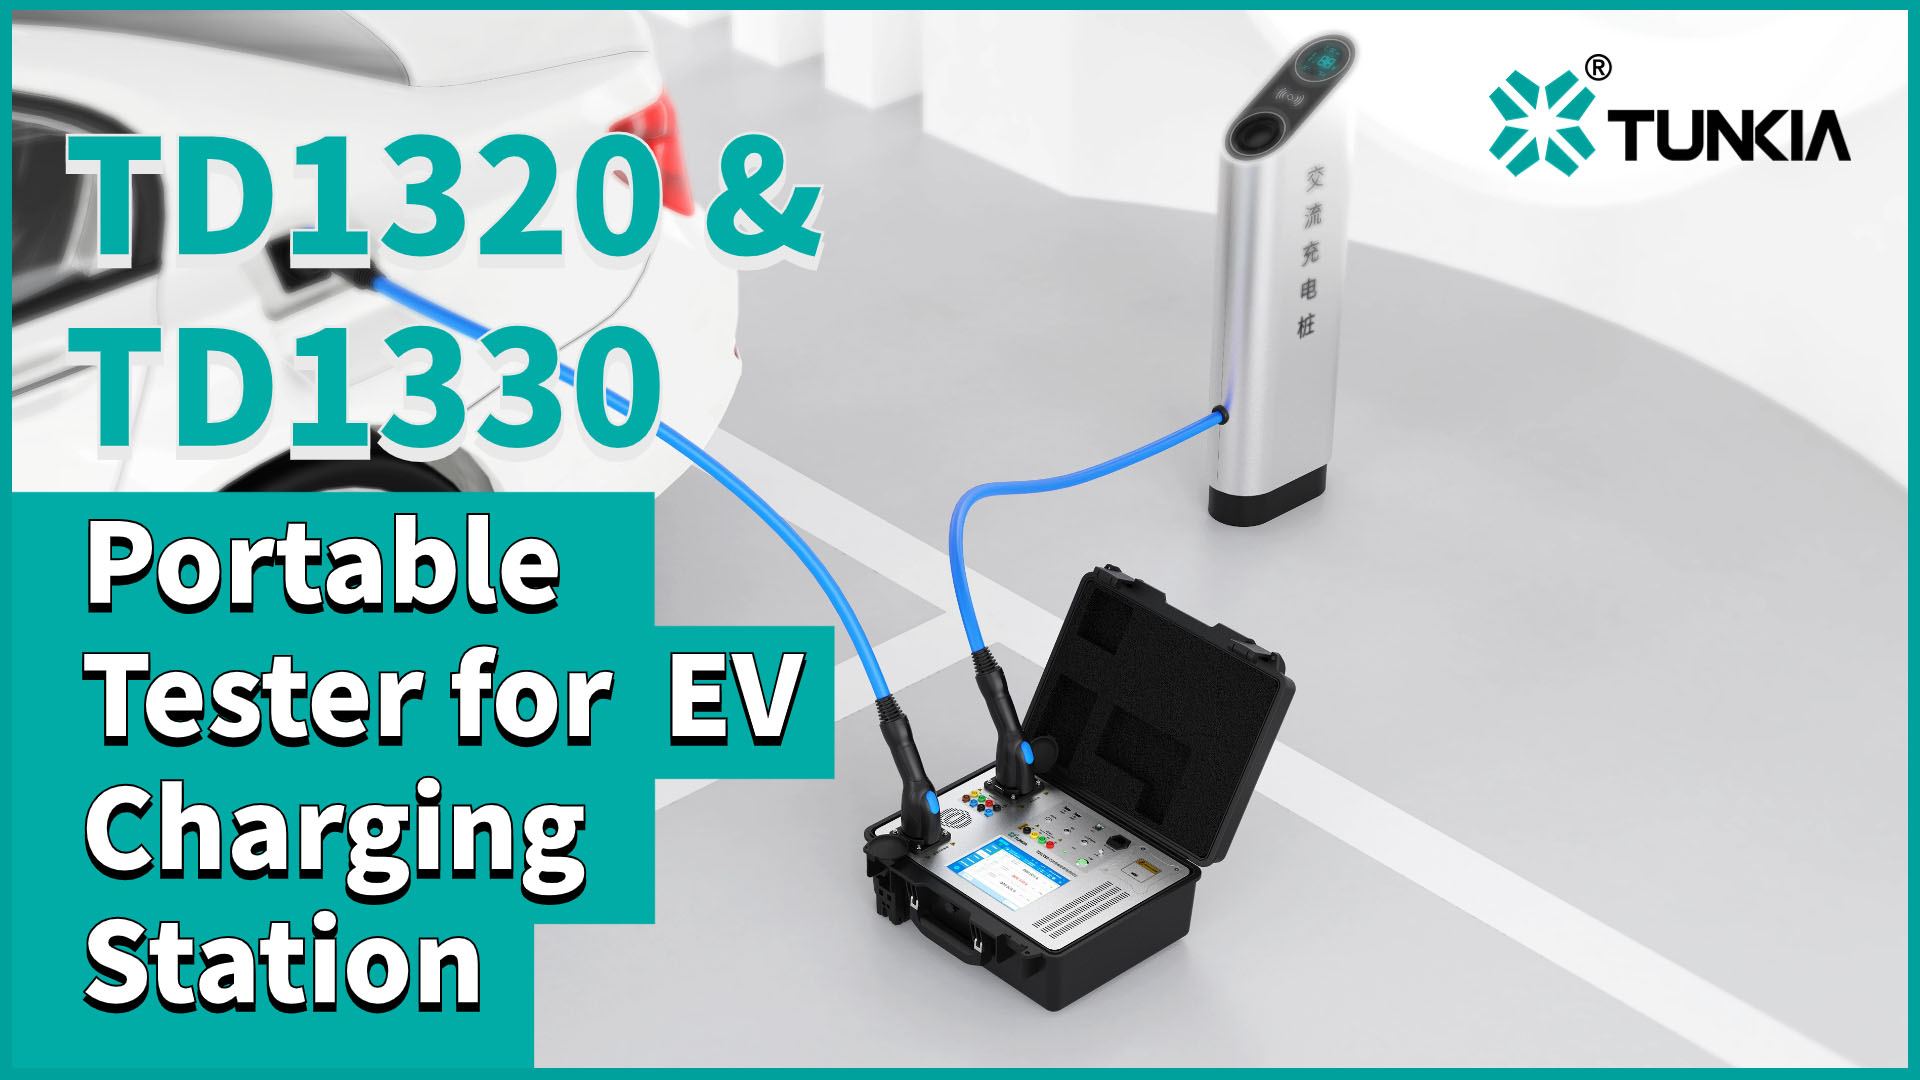 TD1320 & TD1330 Portable Tester for EV Charging Station